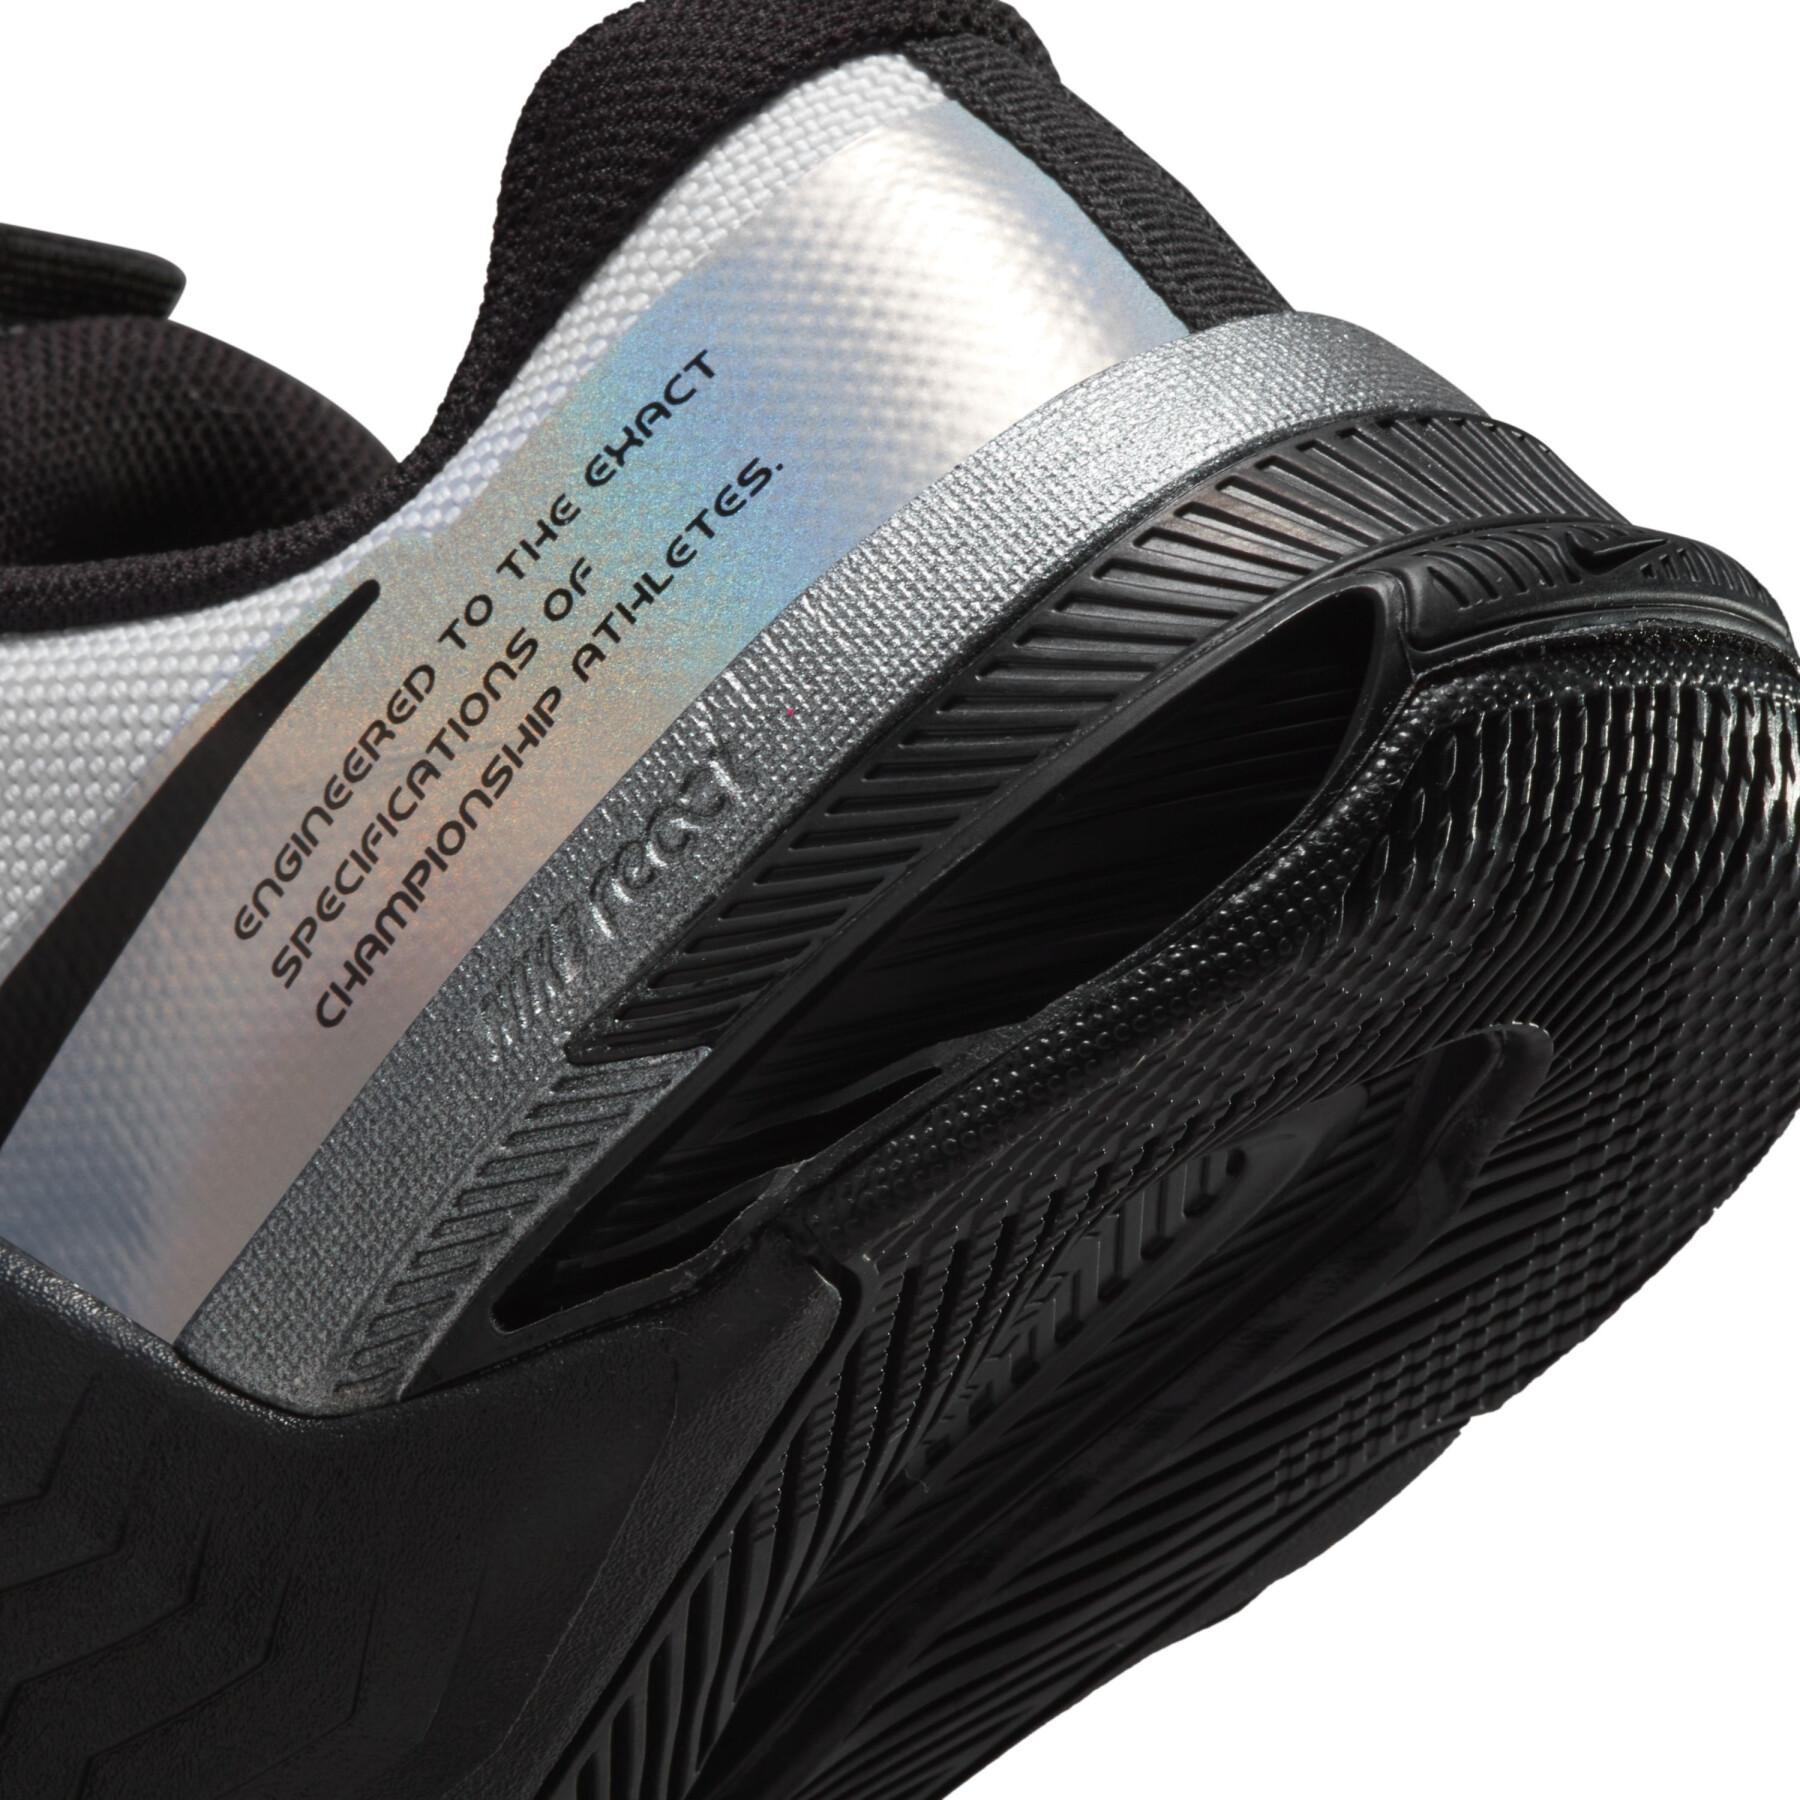 Chaussures de cross training femme Nike Metcon 8 Premium